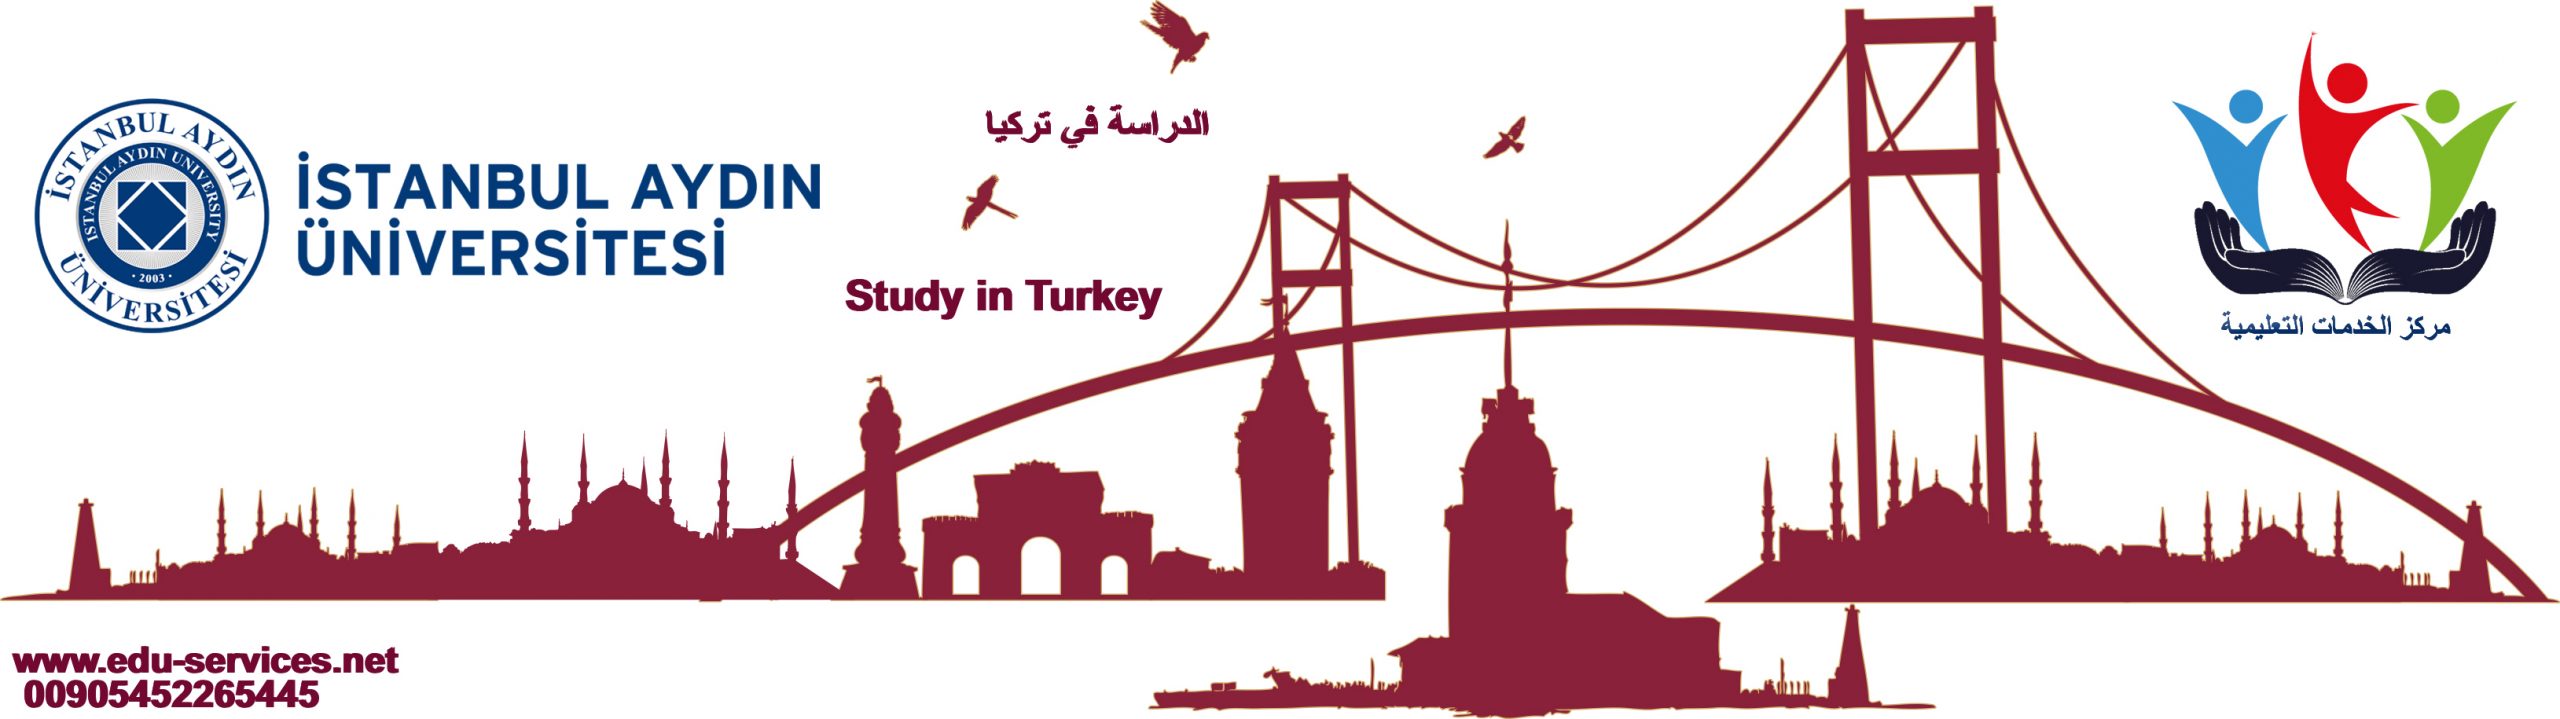 الدراسة في تركيا-جامعة اسطنبول ايدن